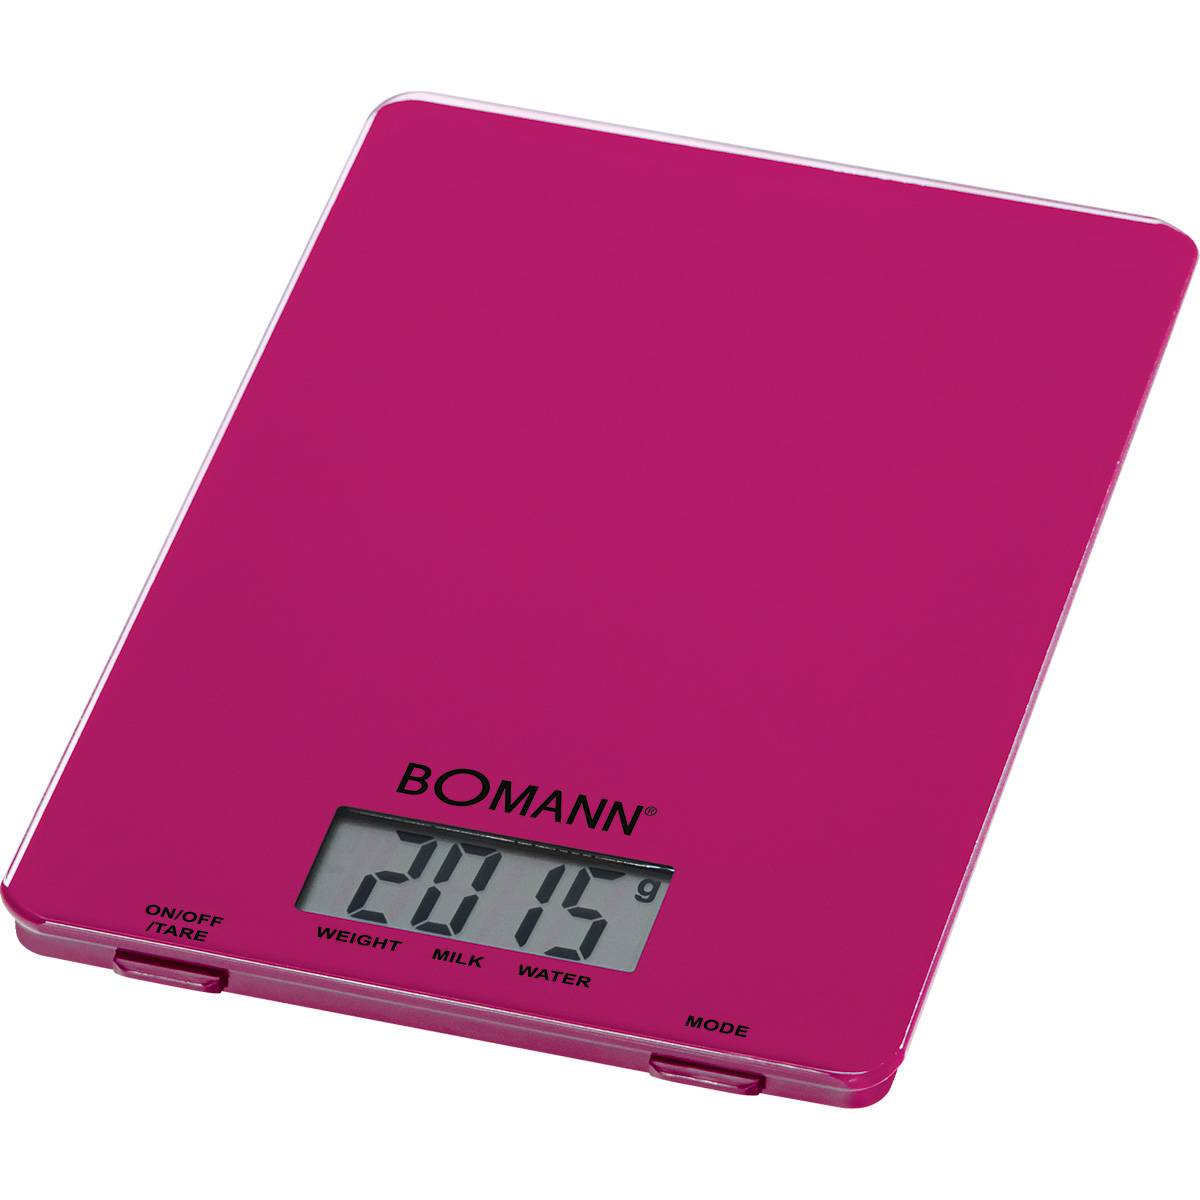 Bomann KW 1515 - Báscula de cocina digital, 5 kg, pasos 1 g, función tara, color morada